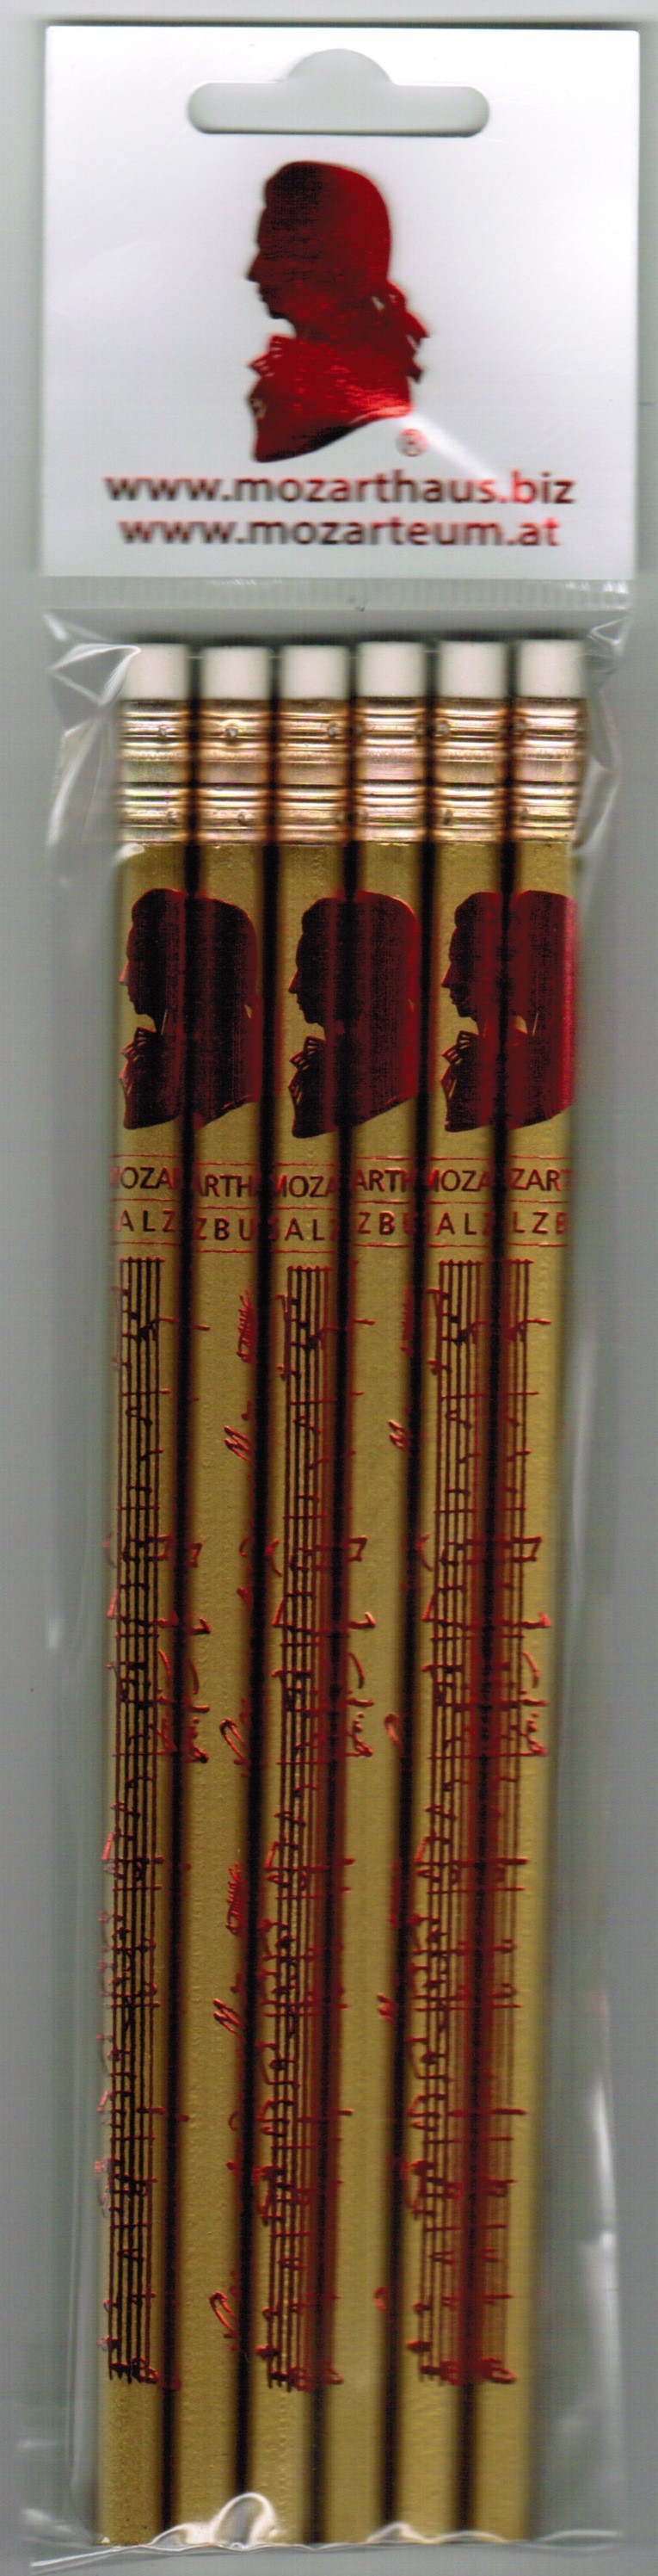 Bleistift Set rot/gold (6 St.)